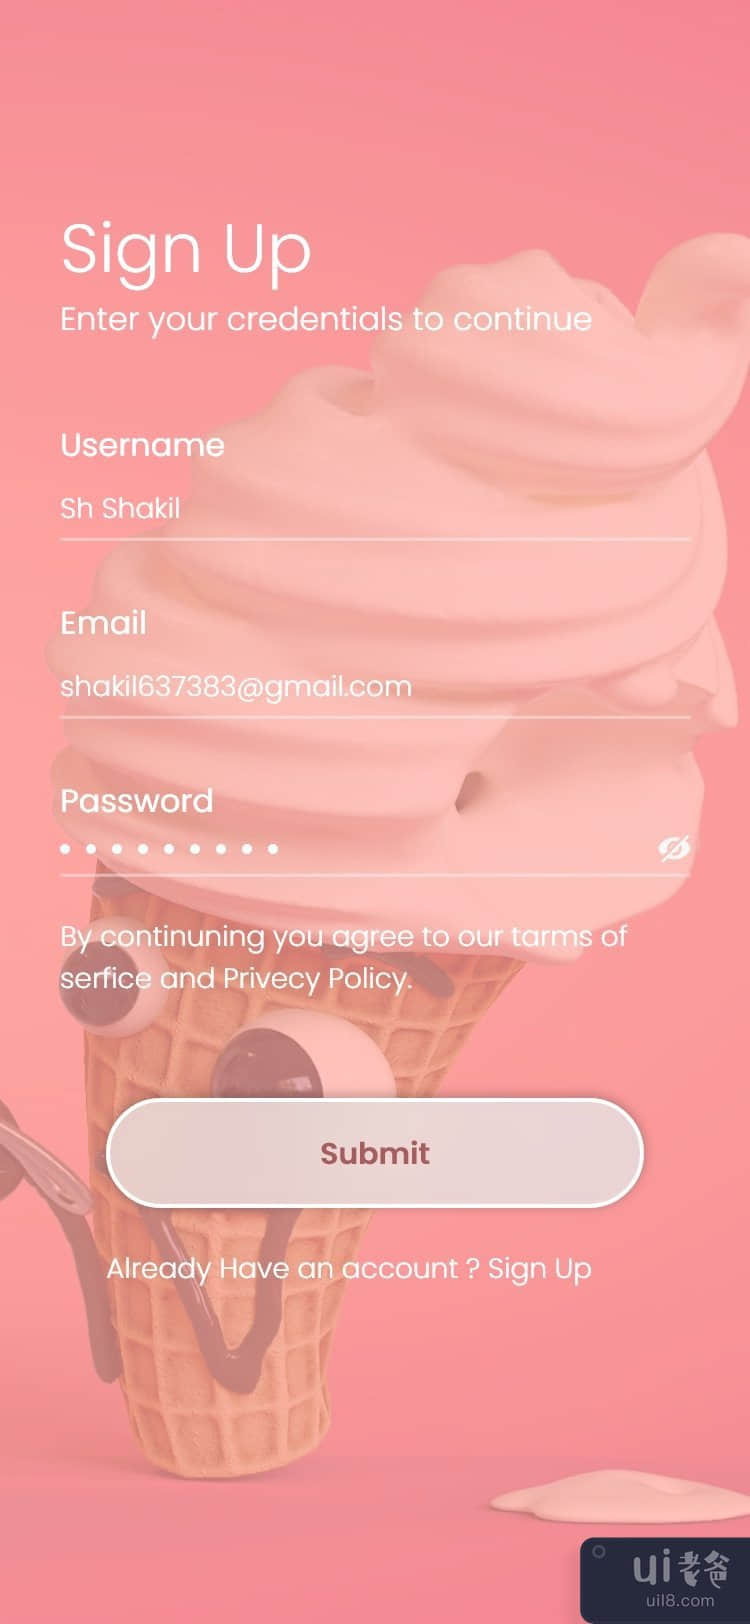 iOS 版冰淇淋应用探索(Ice Cream App Exploration for iOS)插图